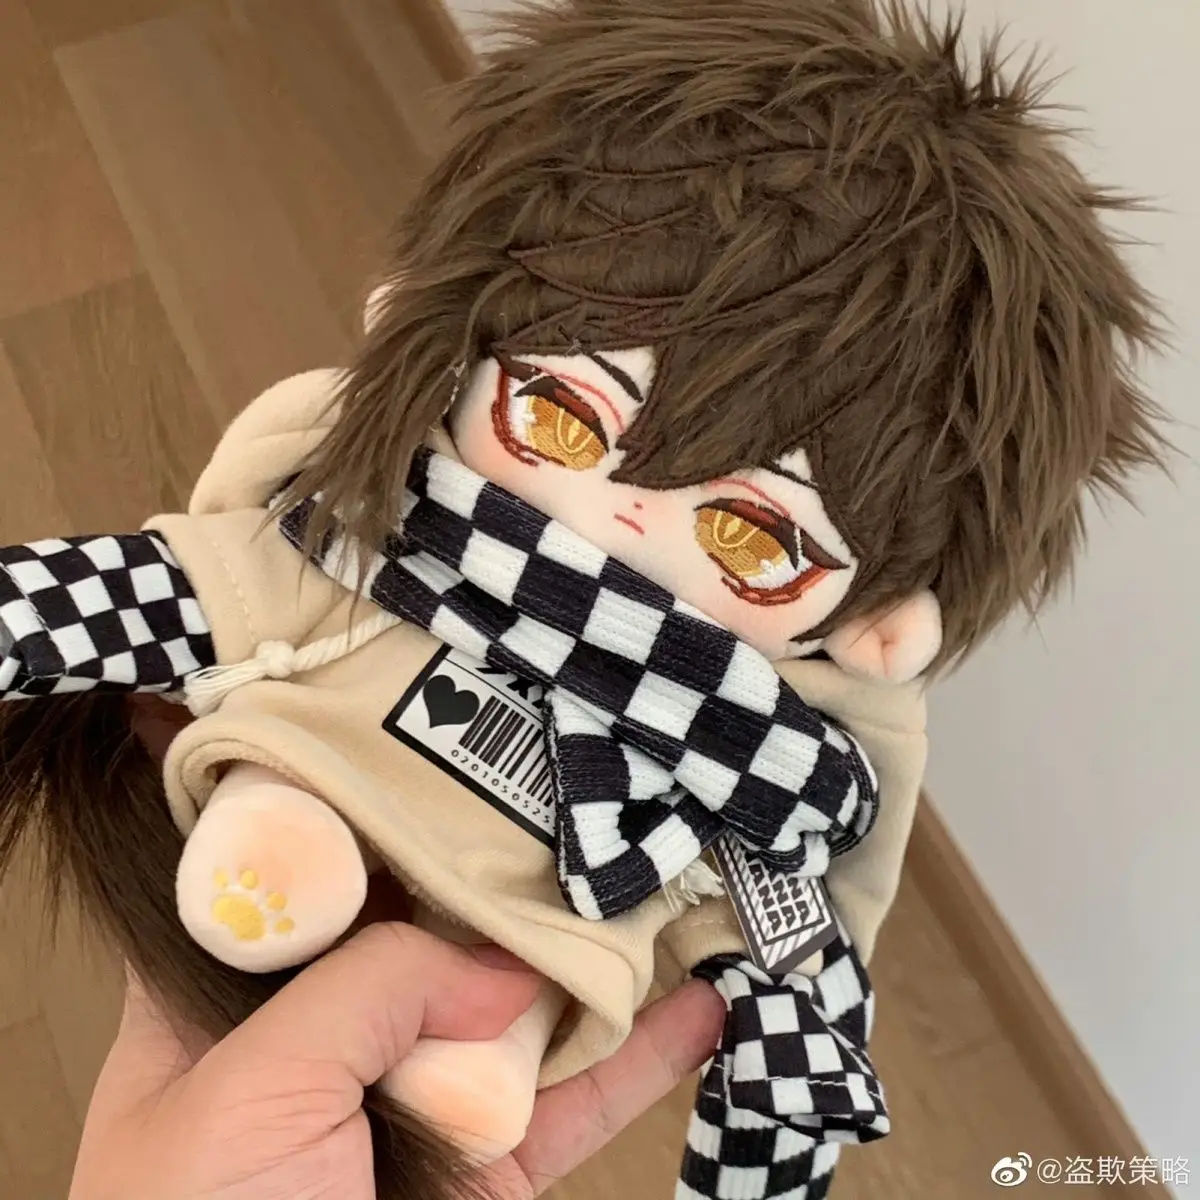 

20 см игра Аниме Genshin Impact Zhongli Косплей симпатичная мягкая плюшевая набивная Кукла наряд одежда игрушка плюшевый подарок